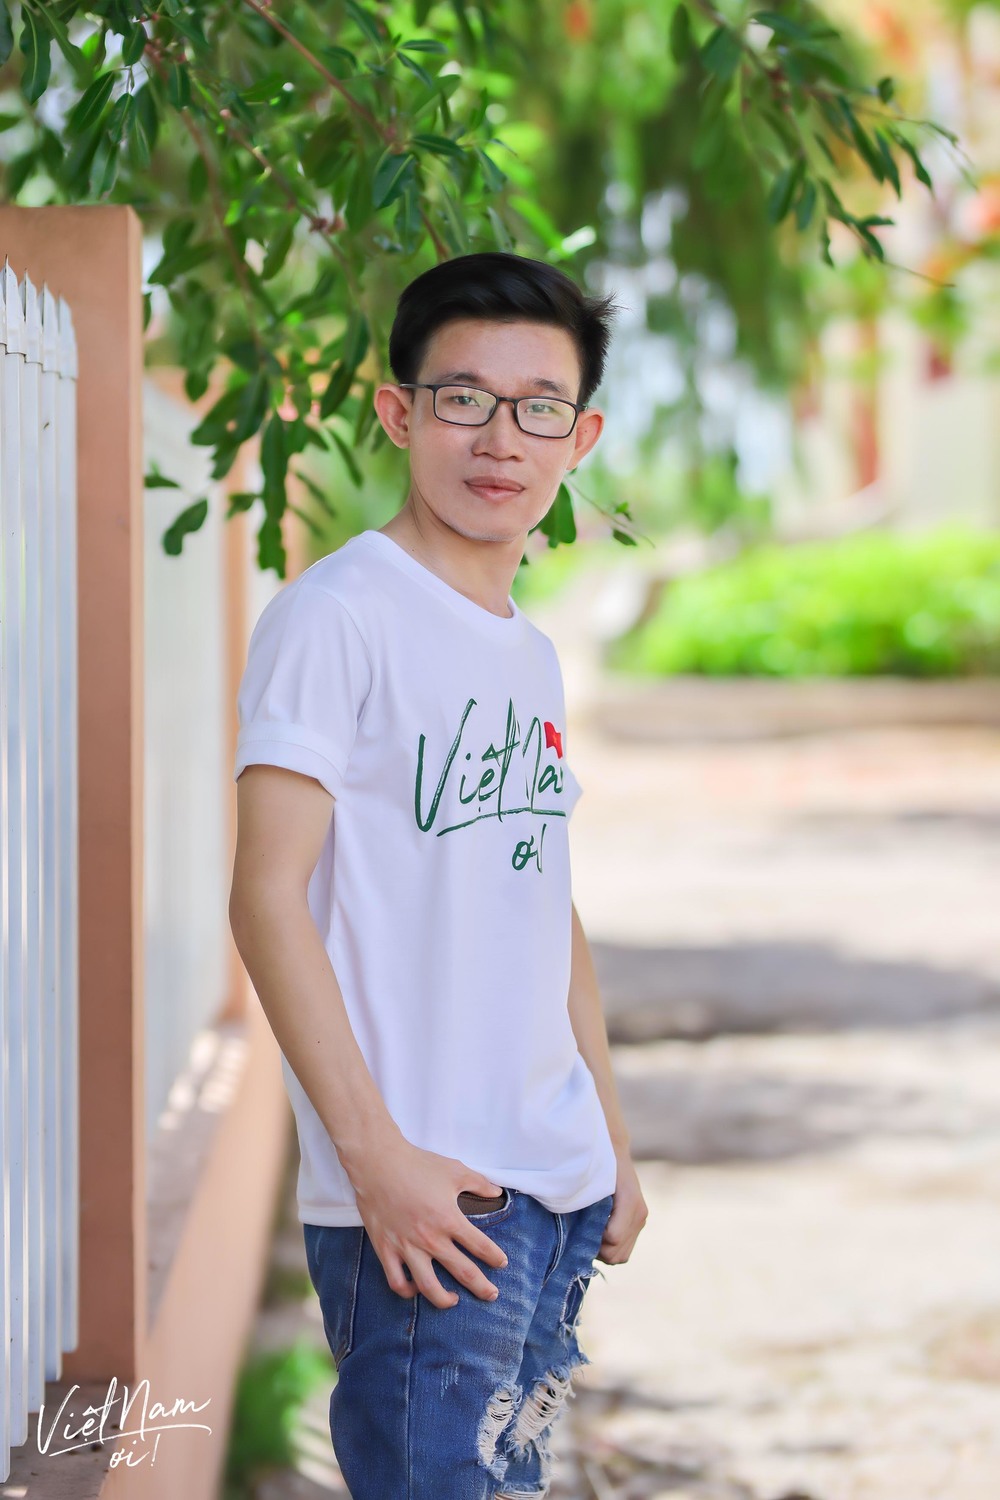  
Nguyễn Văn Tính, thành viên danh dự của cộng đồng Việt Nam Ơi.